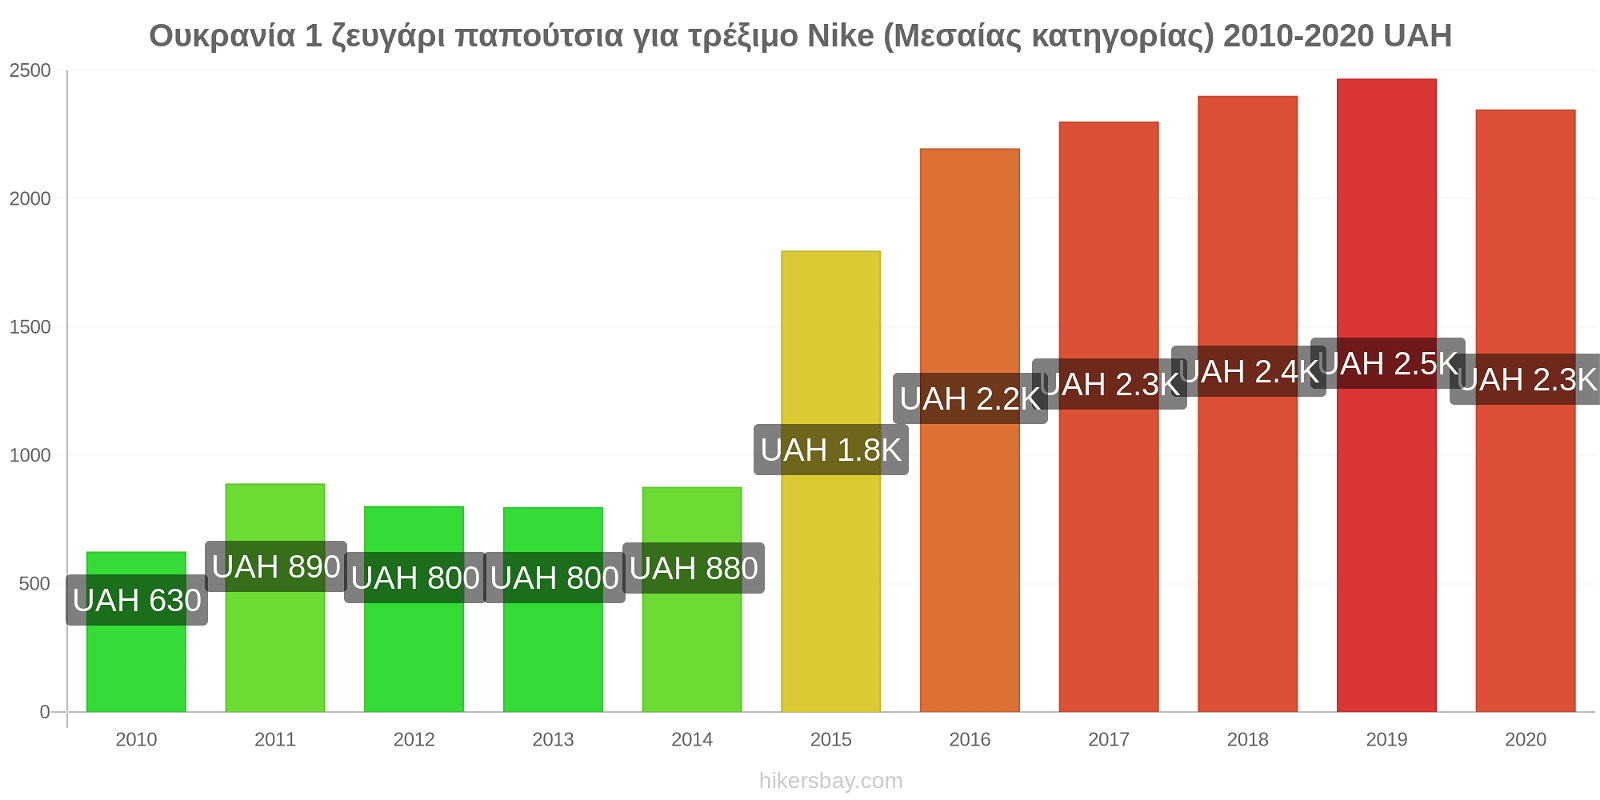 Ουκρανία αλλαγές τιμών 1 ζευγάρι παπούτσια για τρέξιμο Nike (Μεσαίας κατηγορίας) hikersbay.com